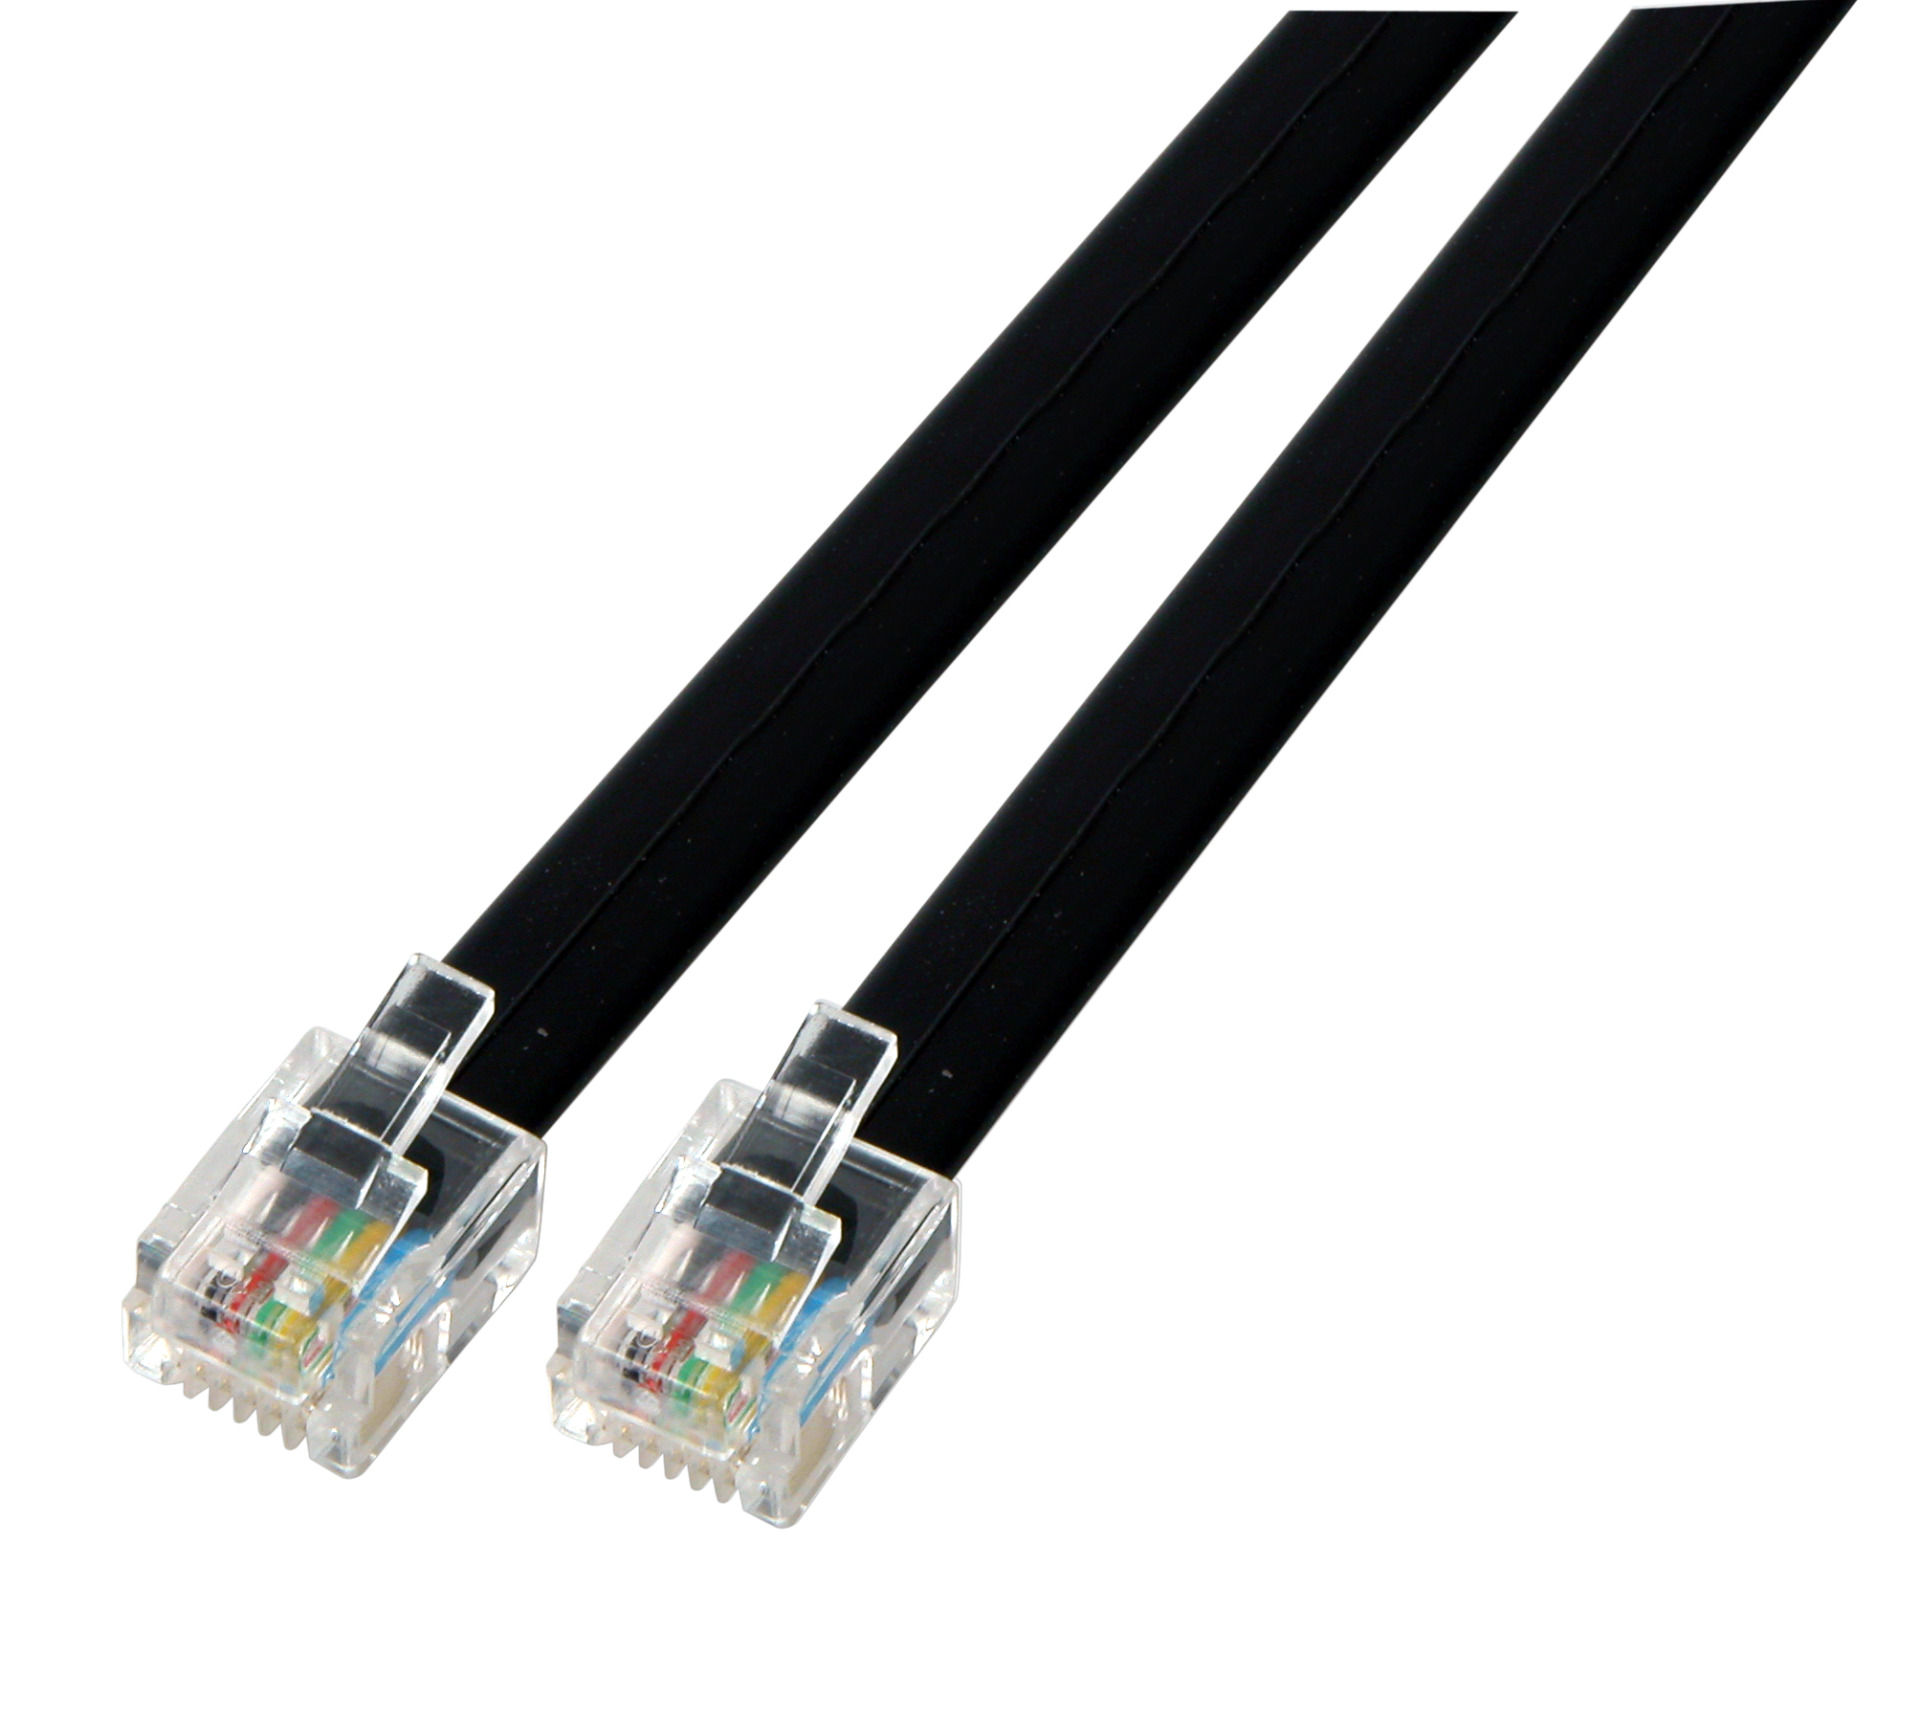 Modular cable black 2 x RJ11 (6/4) Plug, 1:1, 0,2m